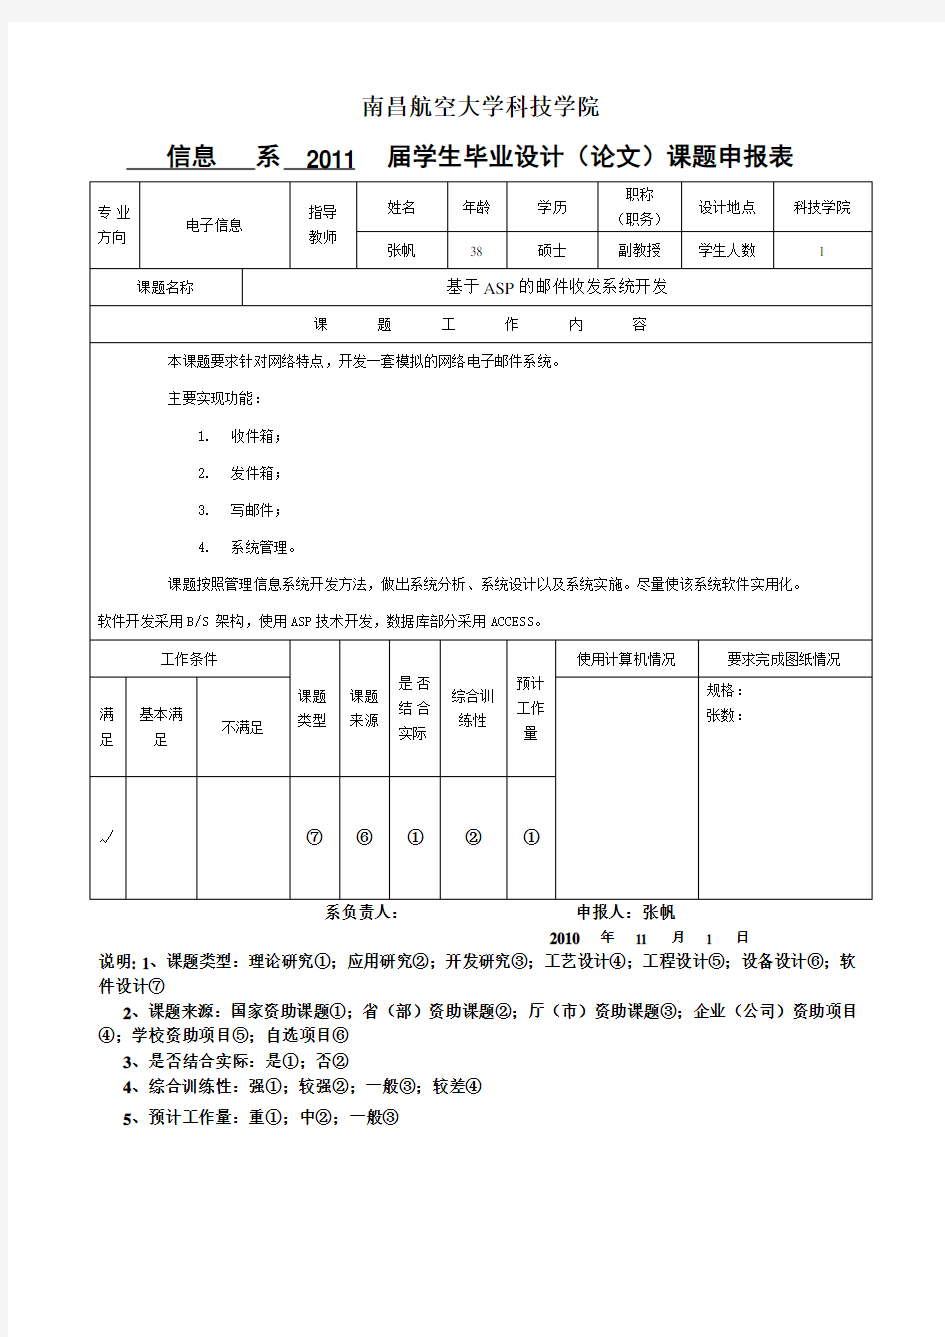 南昌航空大学科技学院毕业设计(论文)课题申报表